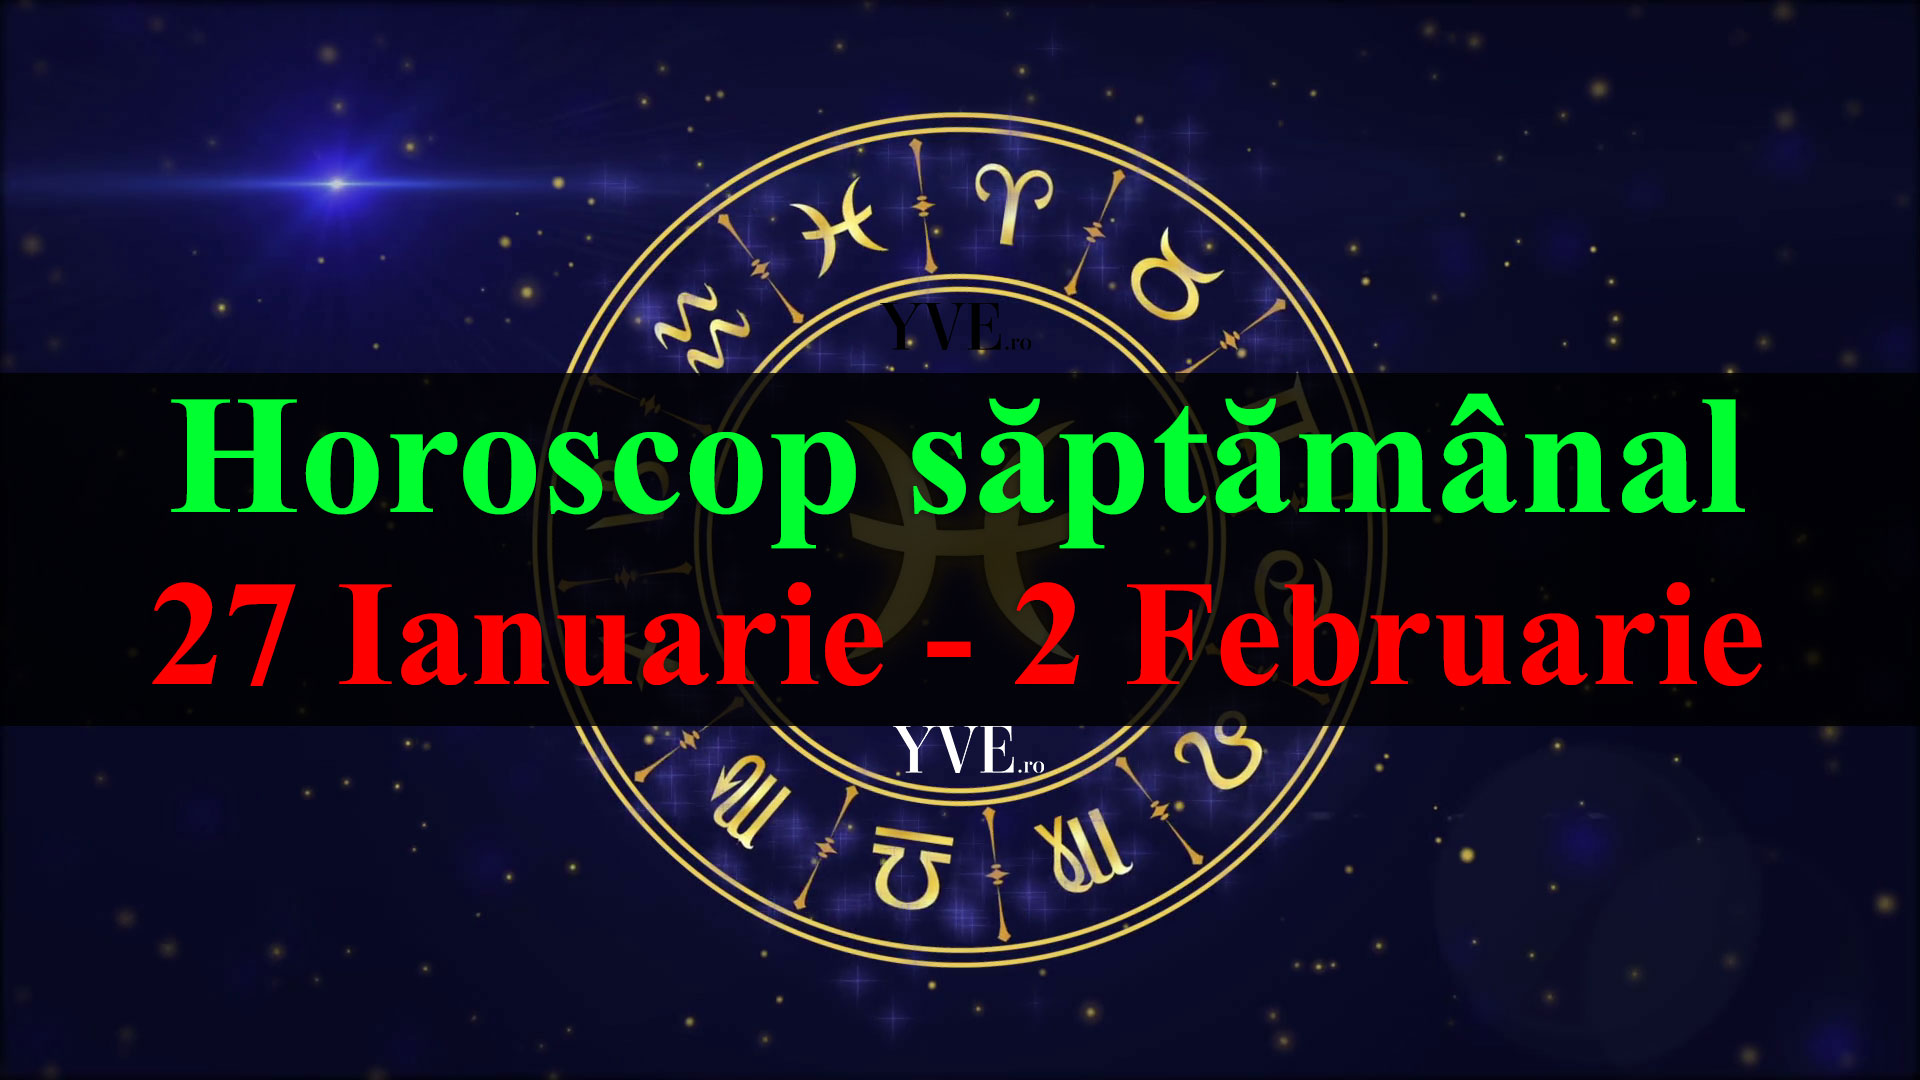 Horoscop saptamanal 27 Ianuarie - 2 Februarie 2020